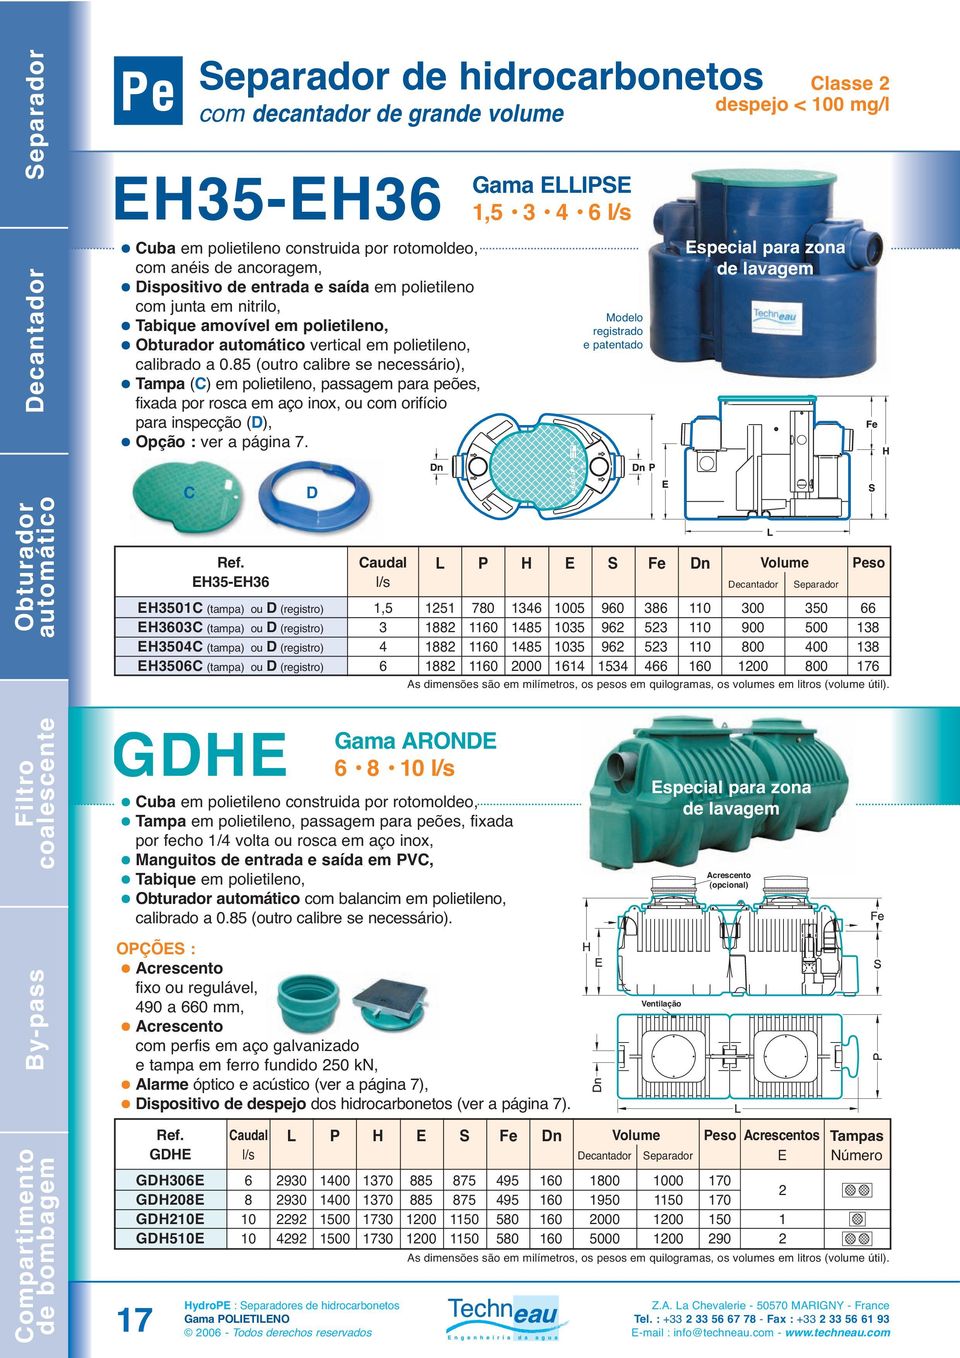 Gama ELLIPSE,5 4 Modelo registrado e patentado Classe despejo < 00 mg/l Especial para zona de lavagem C EH5-EH D EH50C (tampa) ou D (registro) EH0C (tampa) ou D (registro) EH504C (tampa) ou D